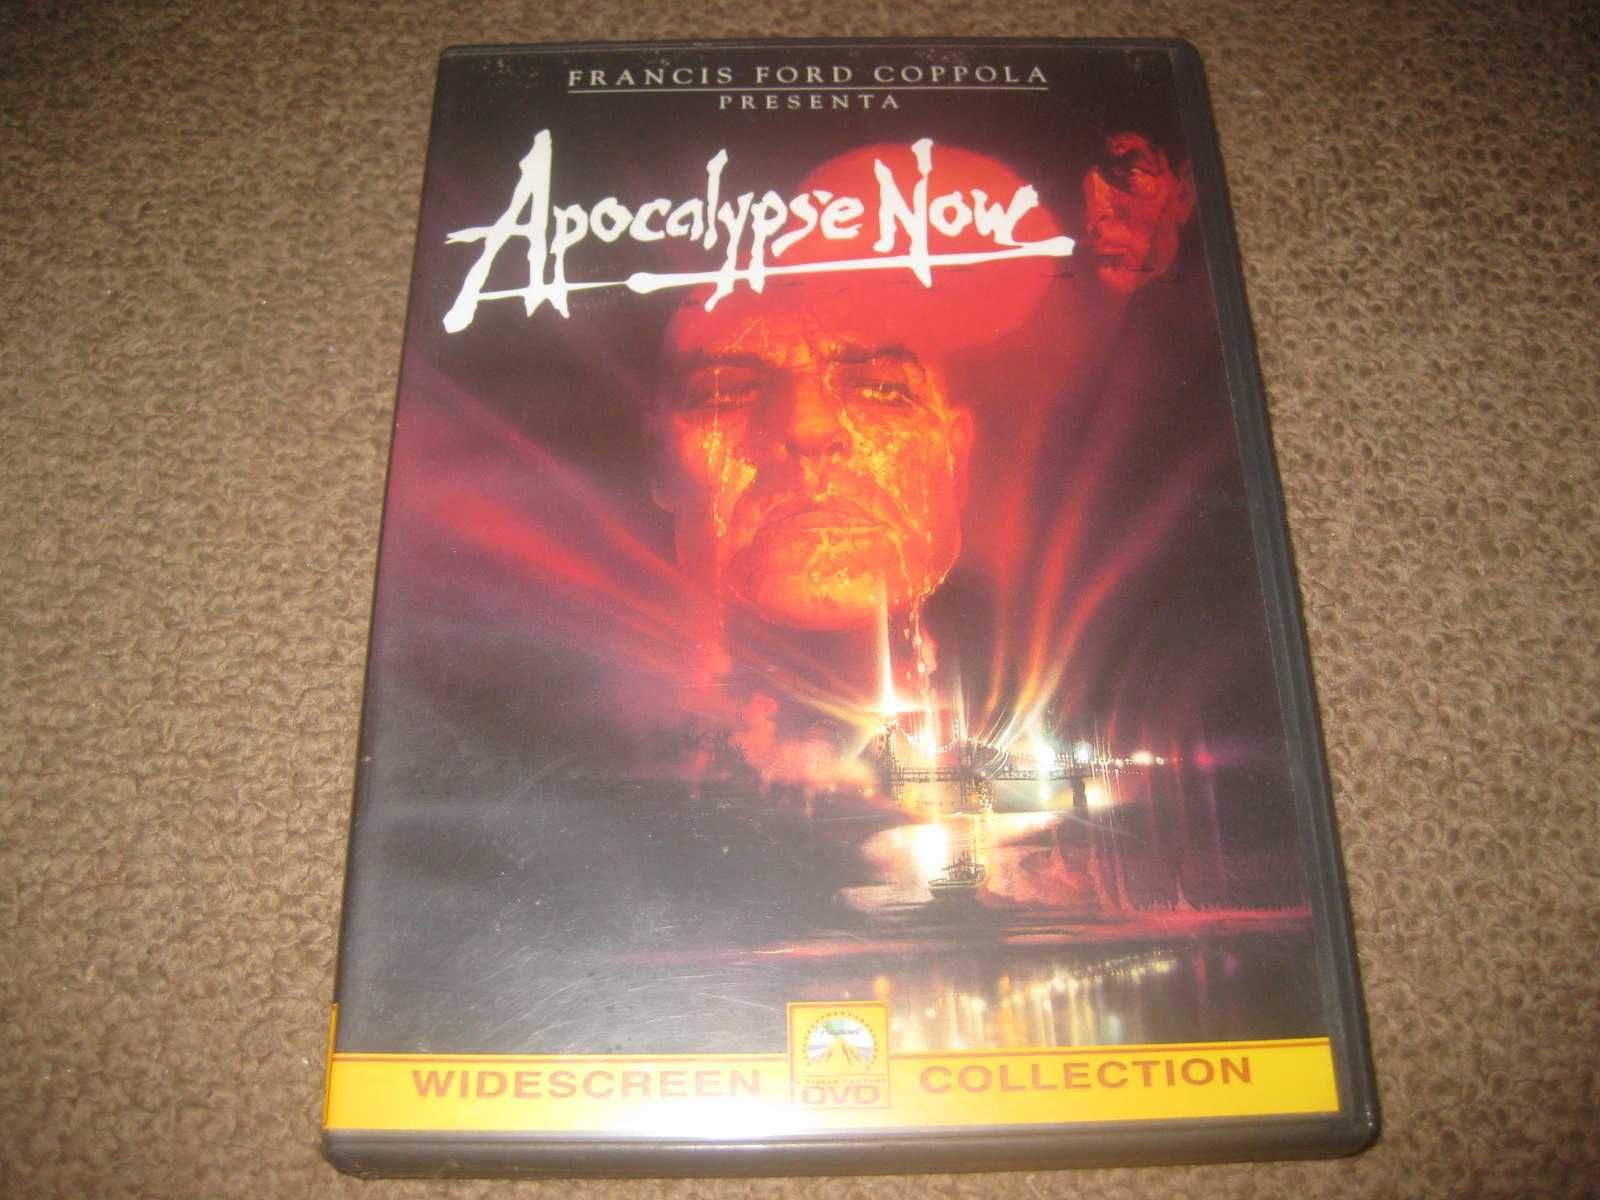 DVD "Apocalypse Now" de Francis Ford Coppola